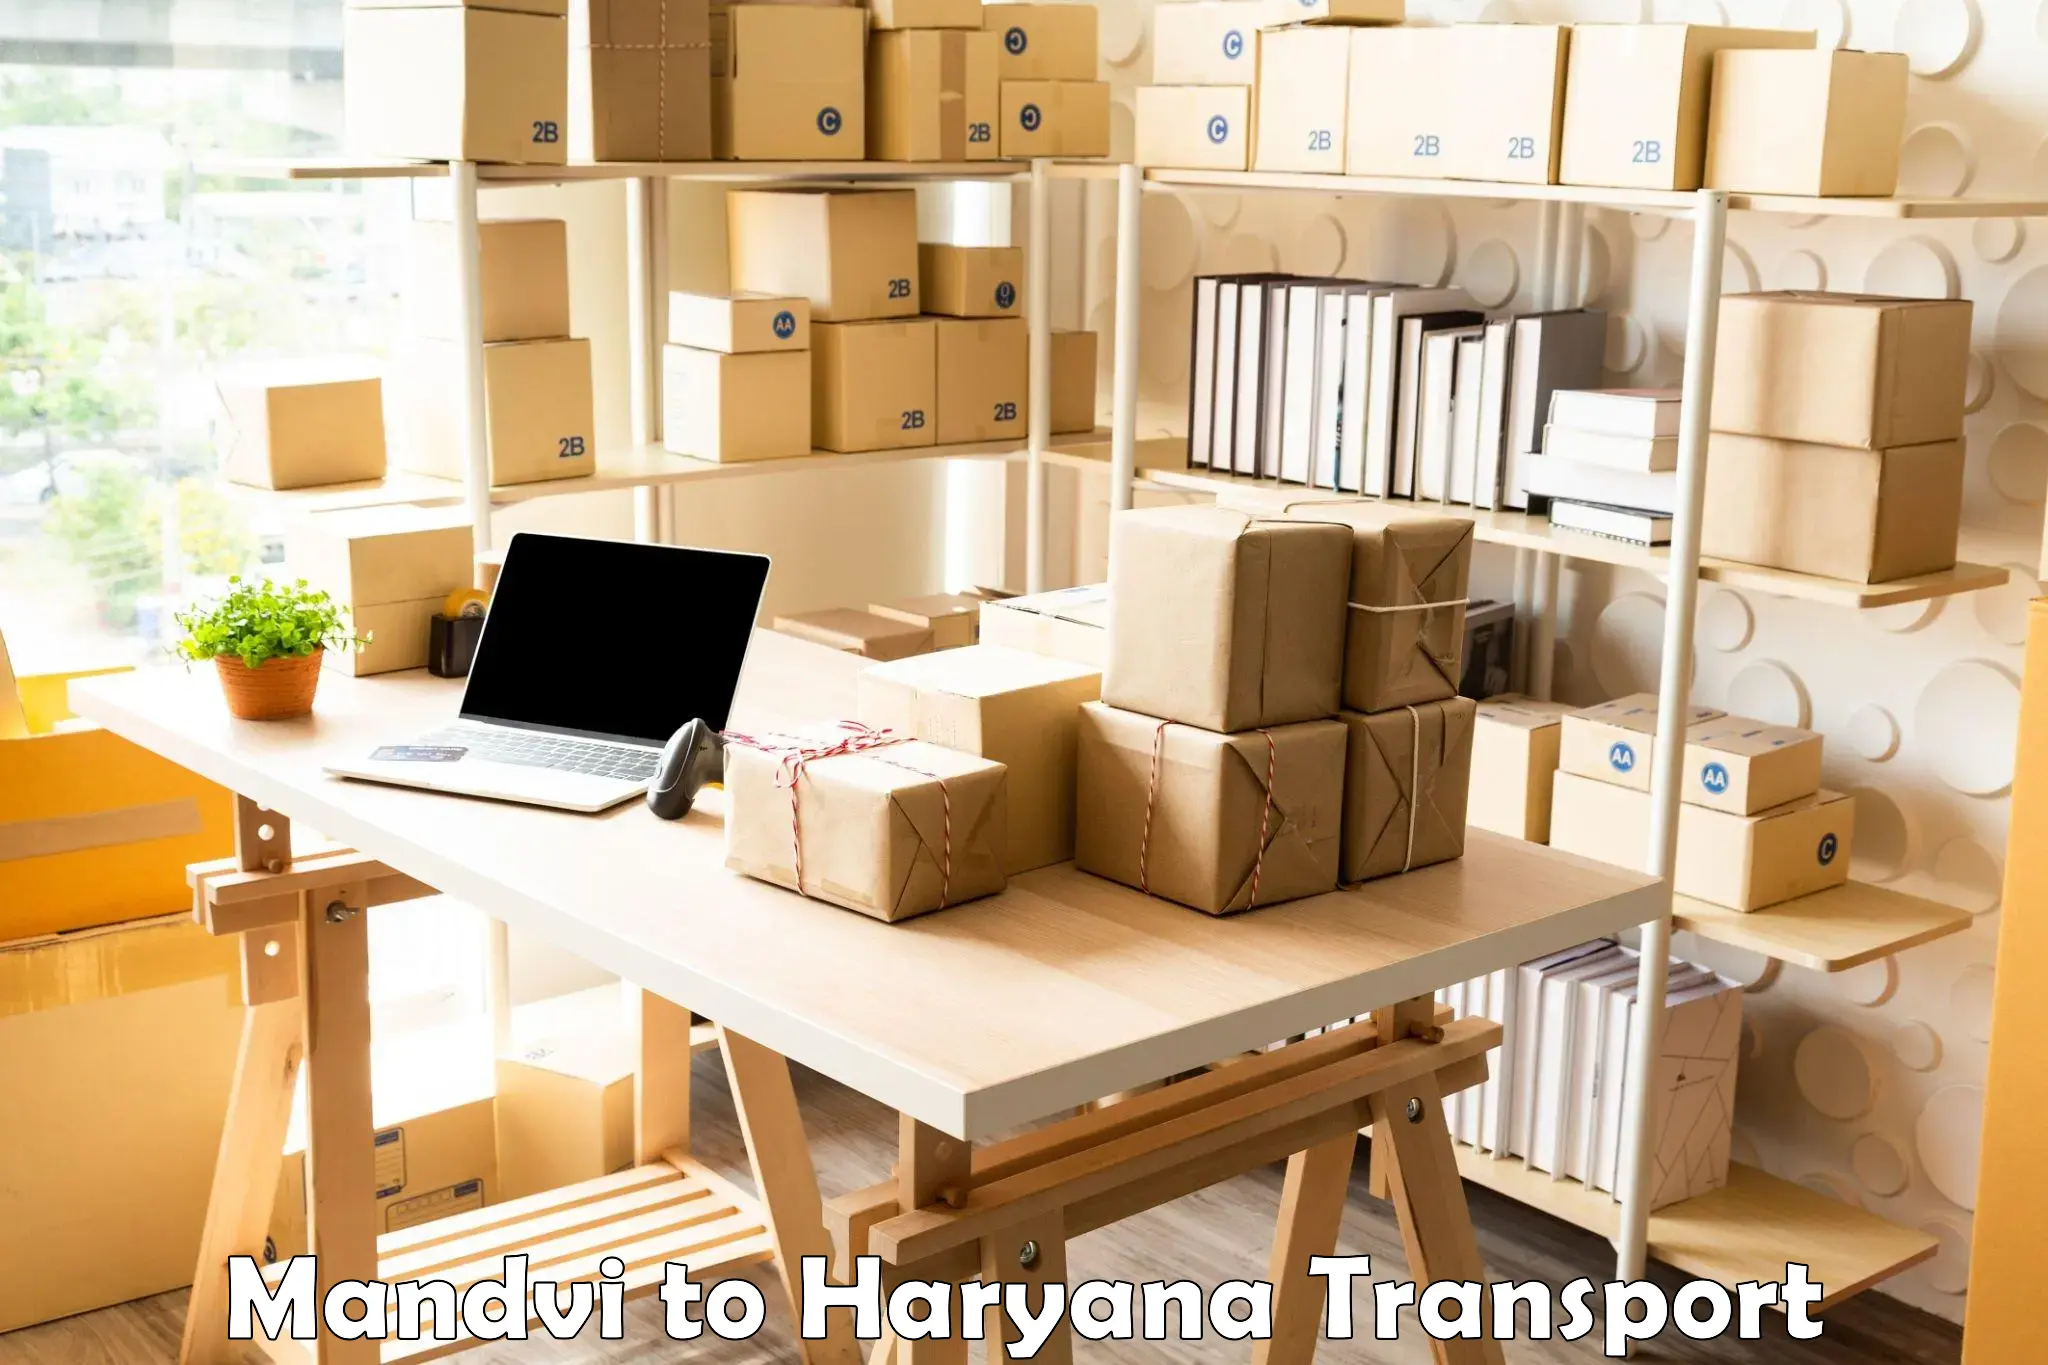 Furniture transport service Mandvi to Bhiwani